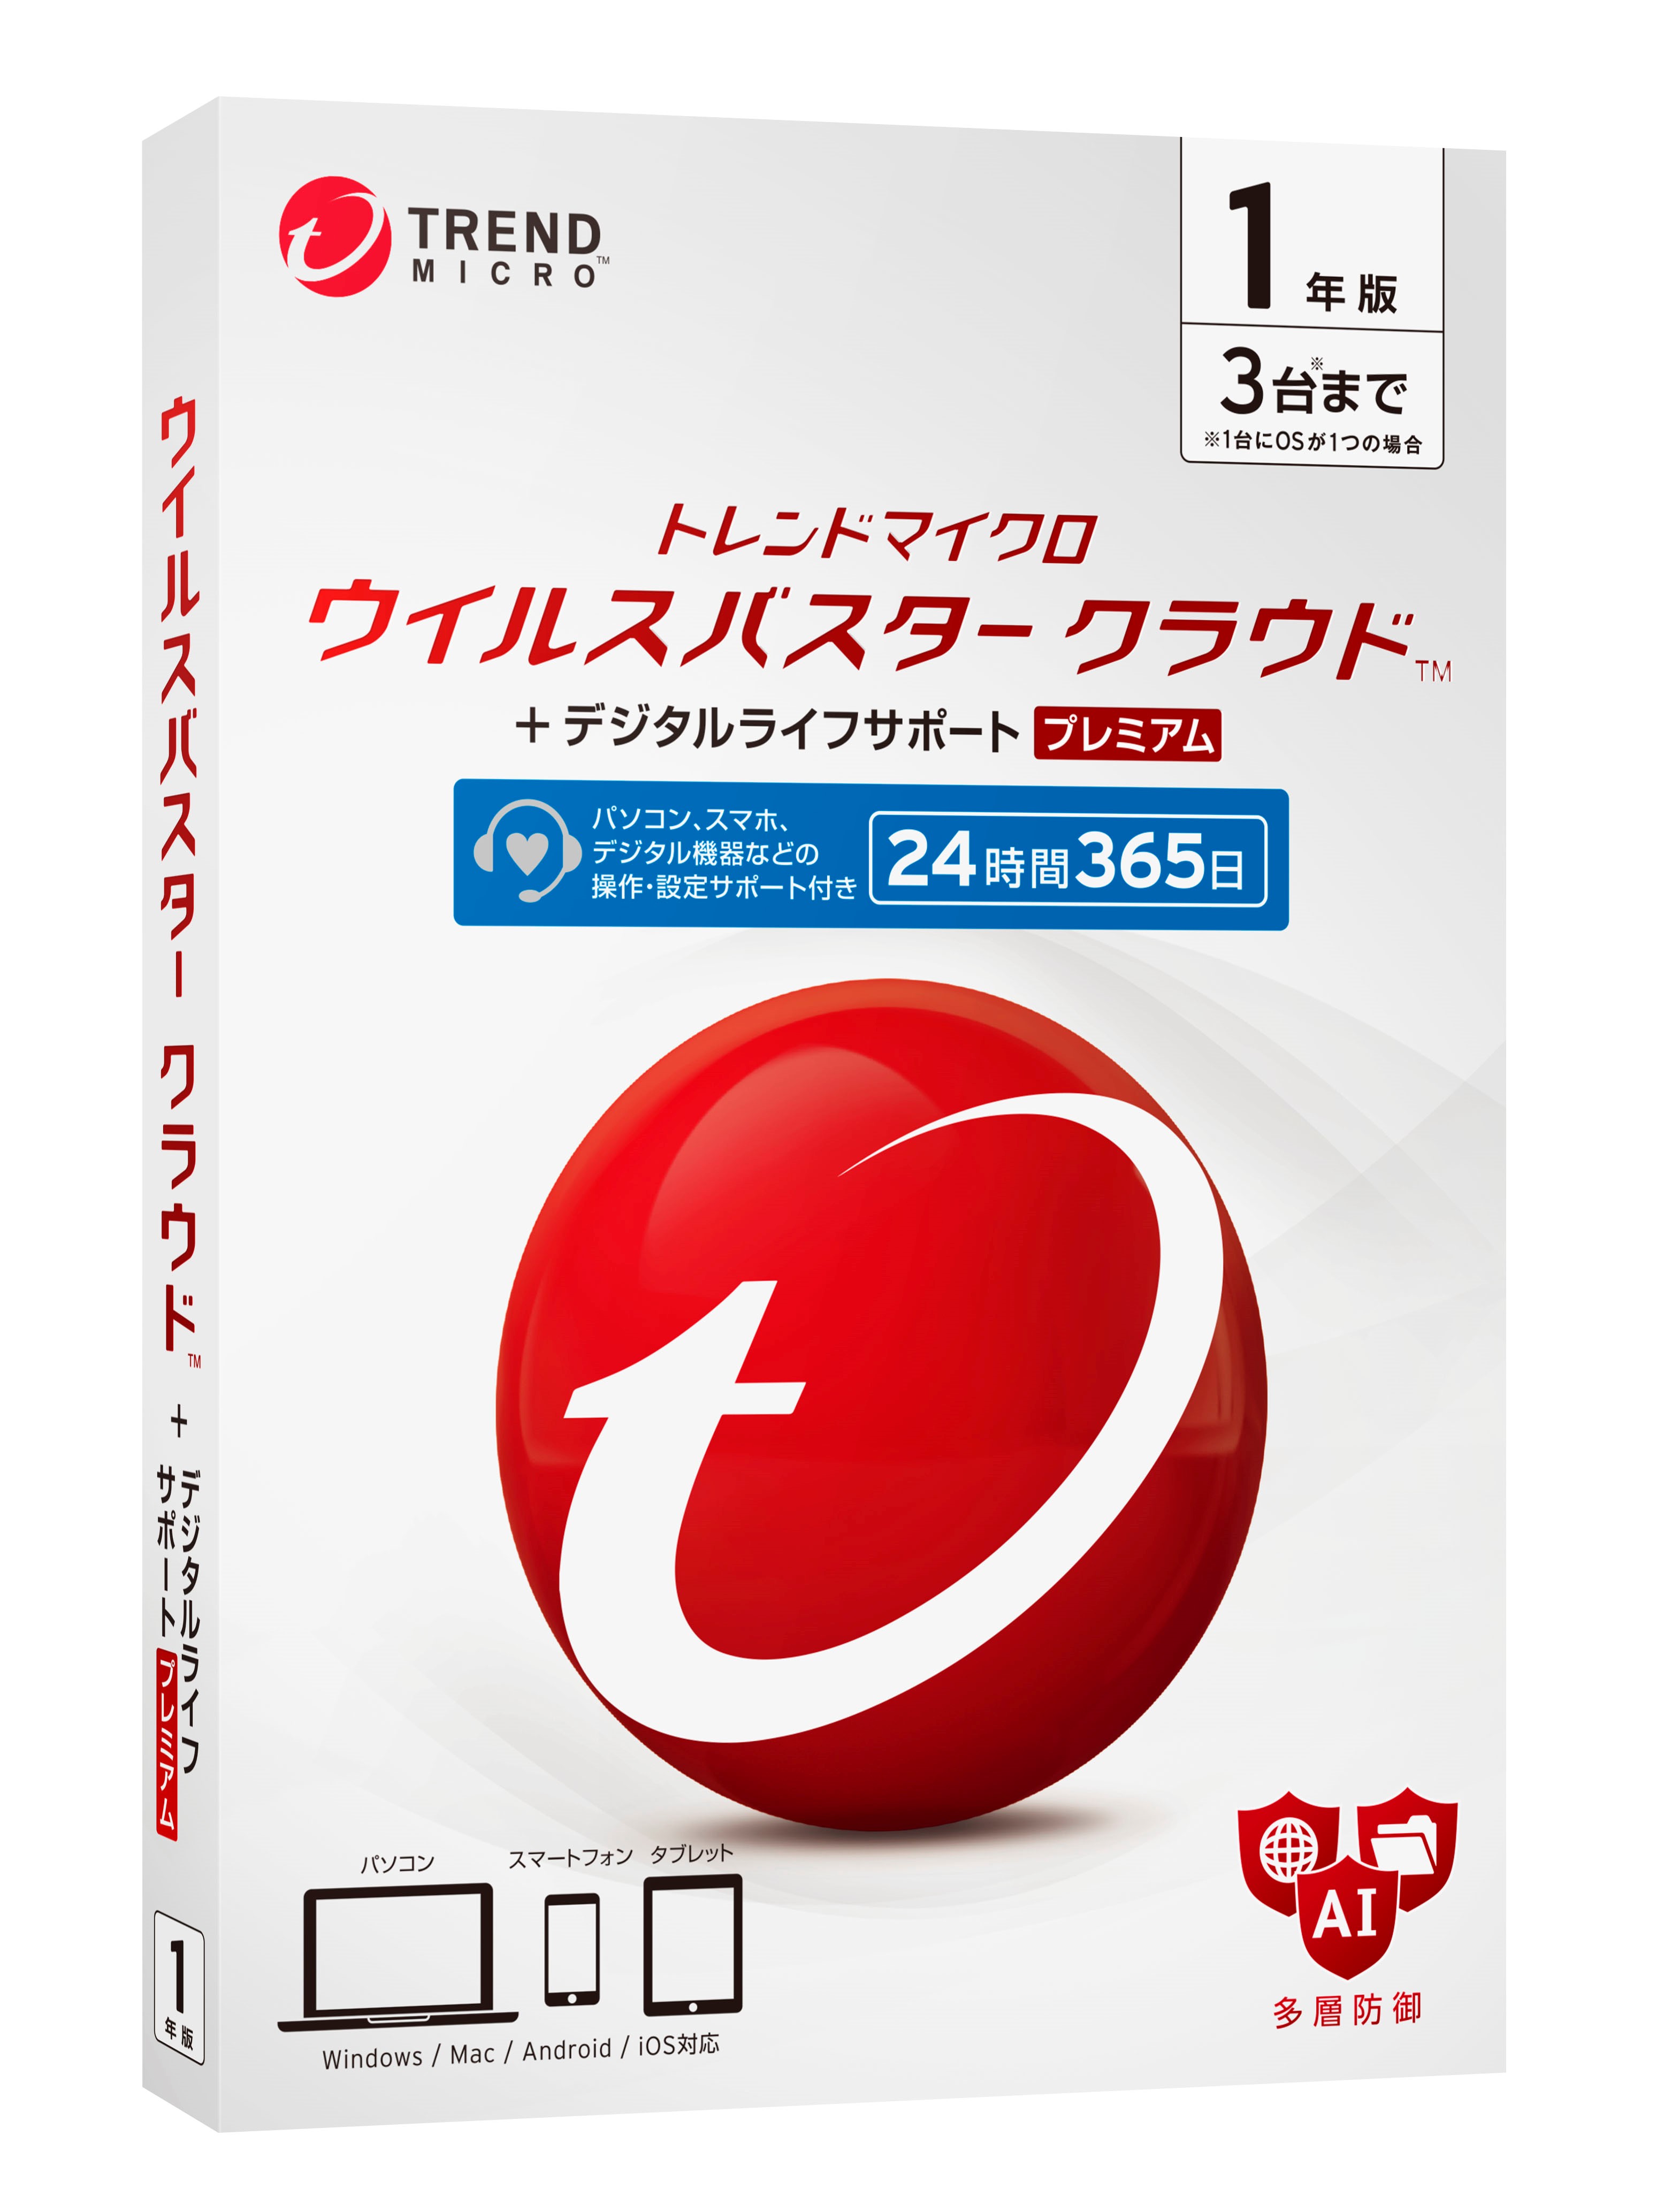 12681円 激安超特価 旧商品ウイルスバスター クラウド 3年 3台版 パッケージ版 Win Mac iOS Android対応